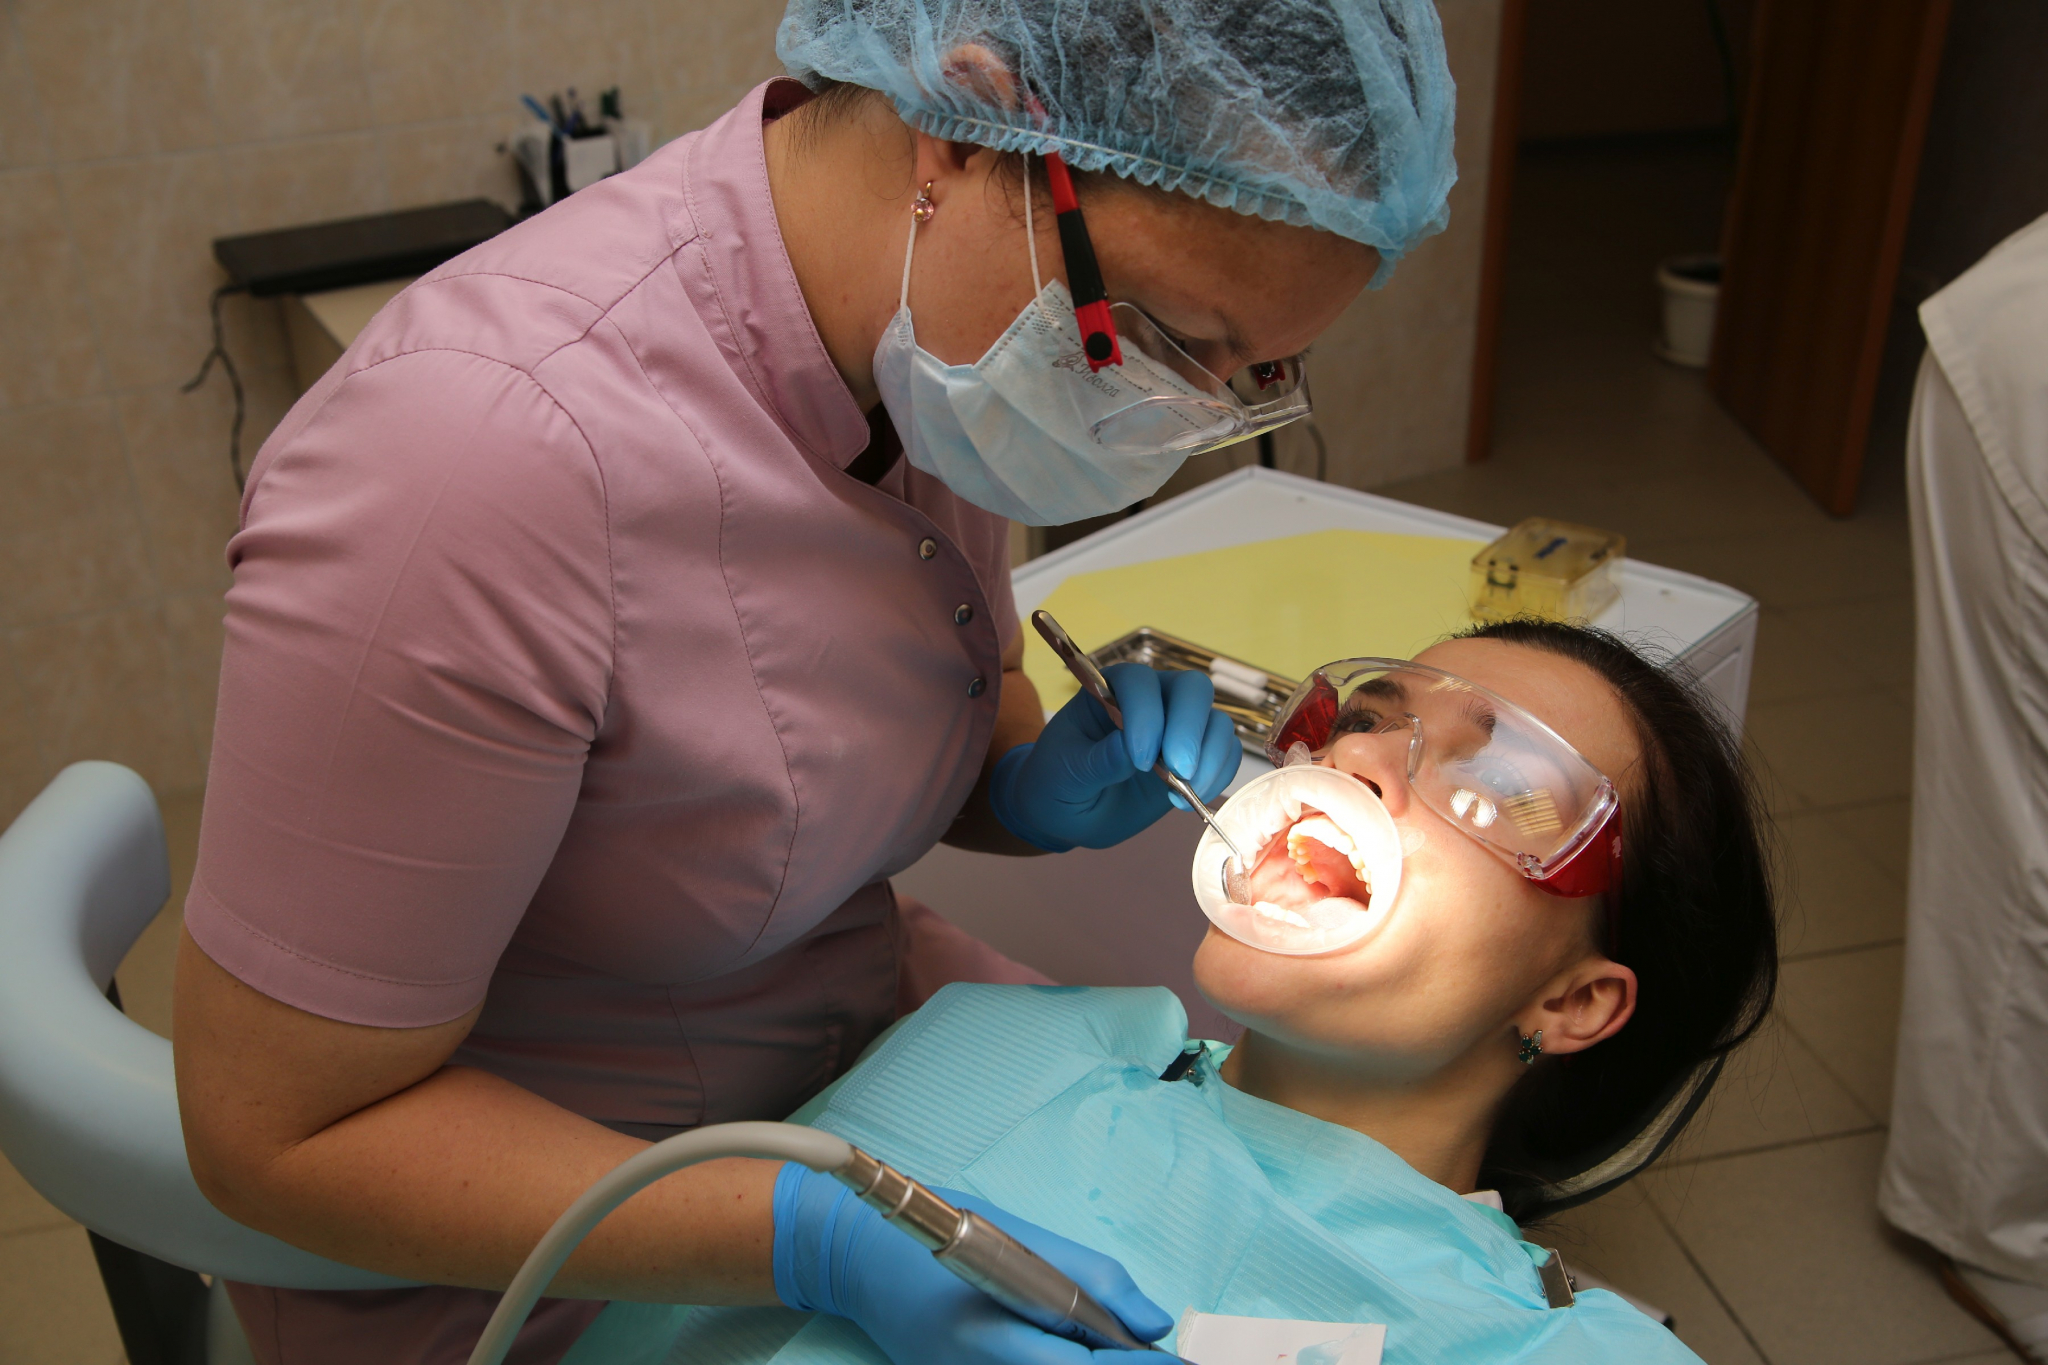 Народный доктор”: стоматолог, который сделал новый зуб за 30 минут